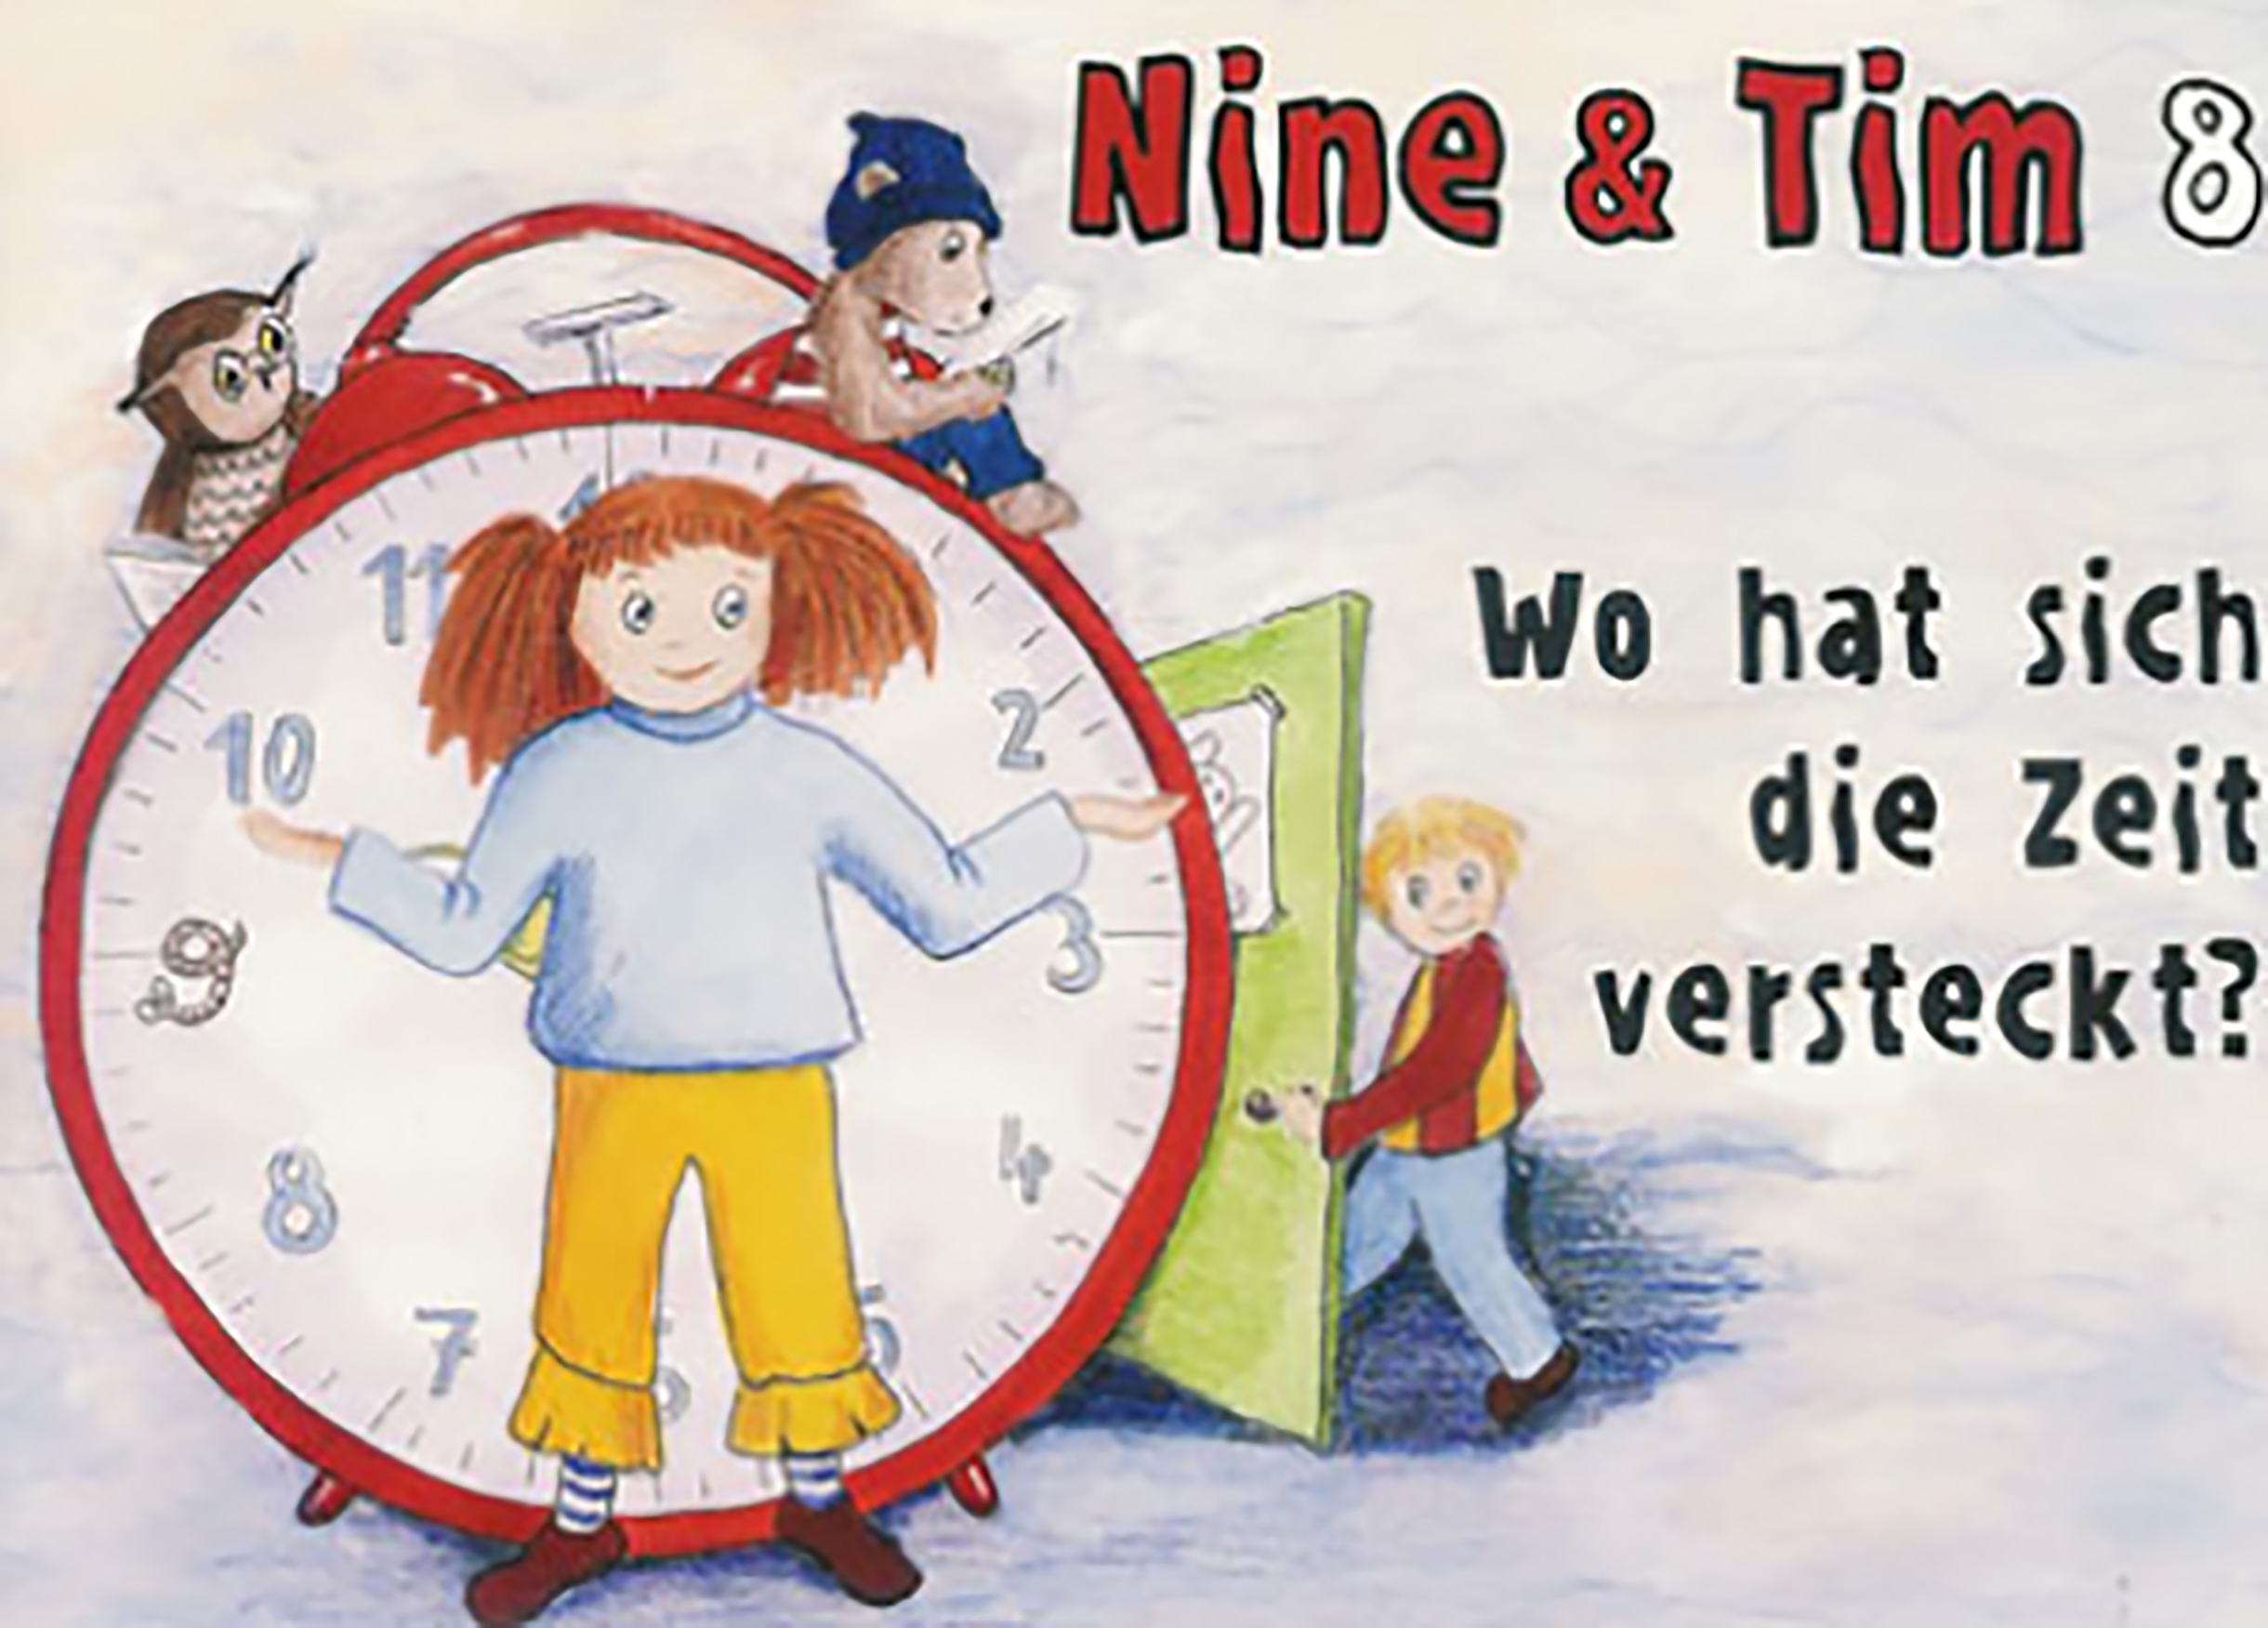 Das Bild zeigt ein Cover der Publikation Nine  Tim Heft 08